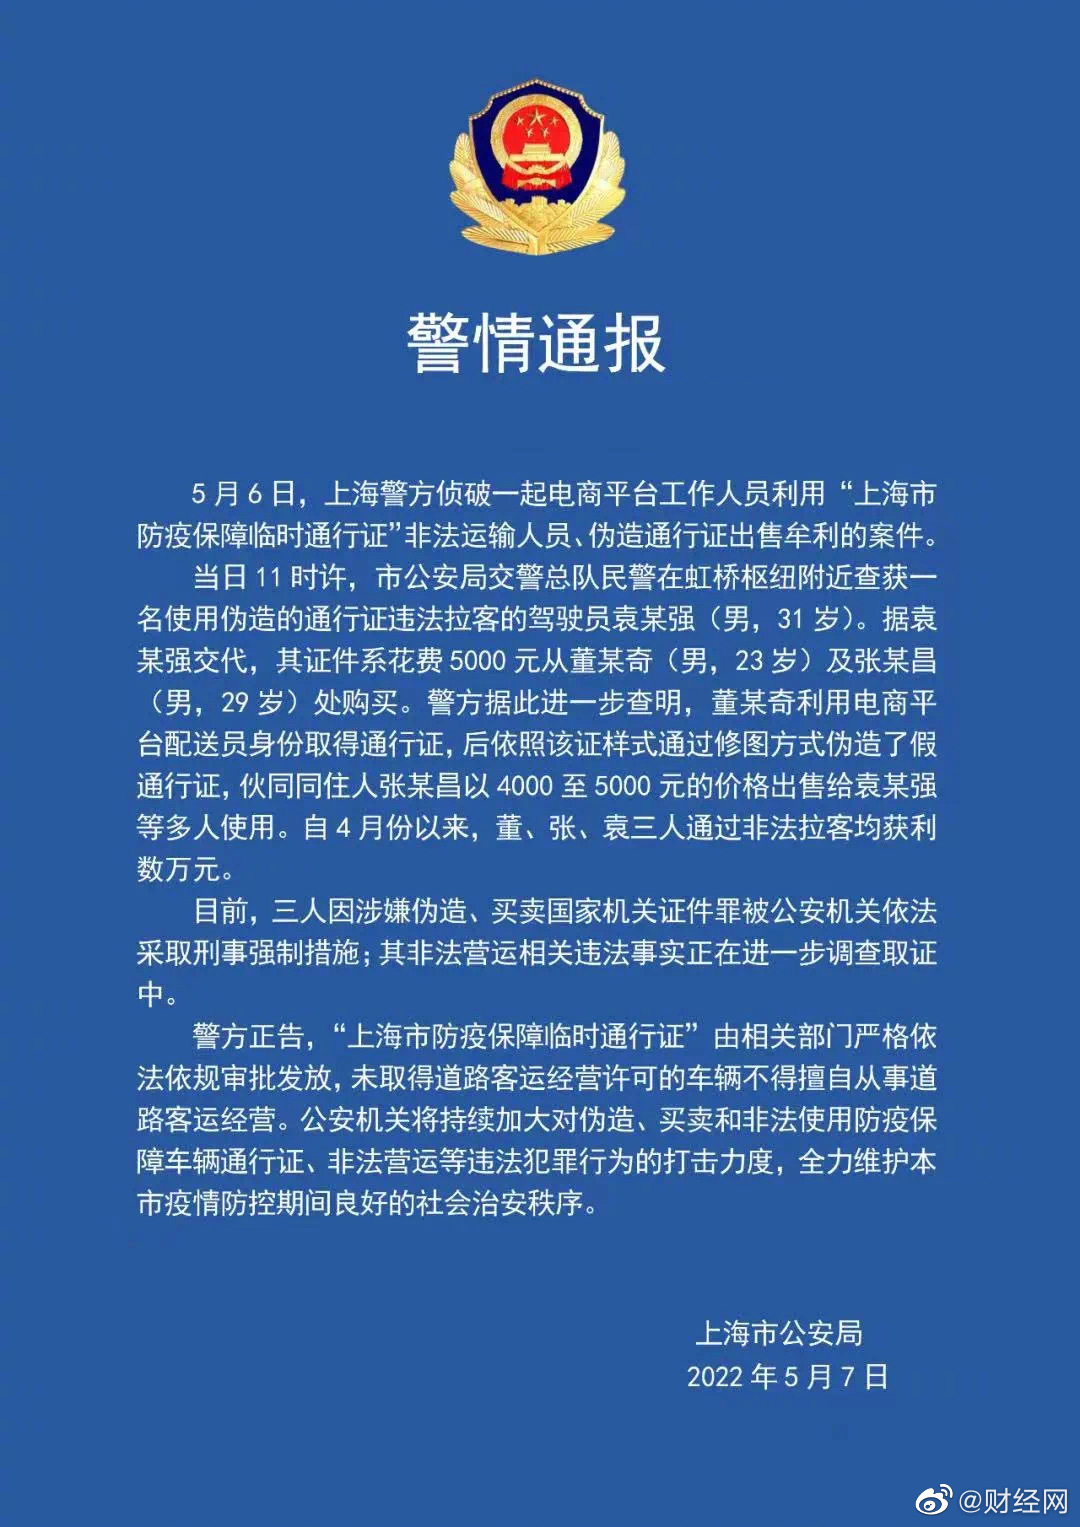 上海一电商配送人员利用通行证非法牟利 公安机关依法采取刑事强制措施